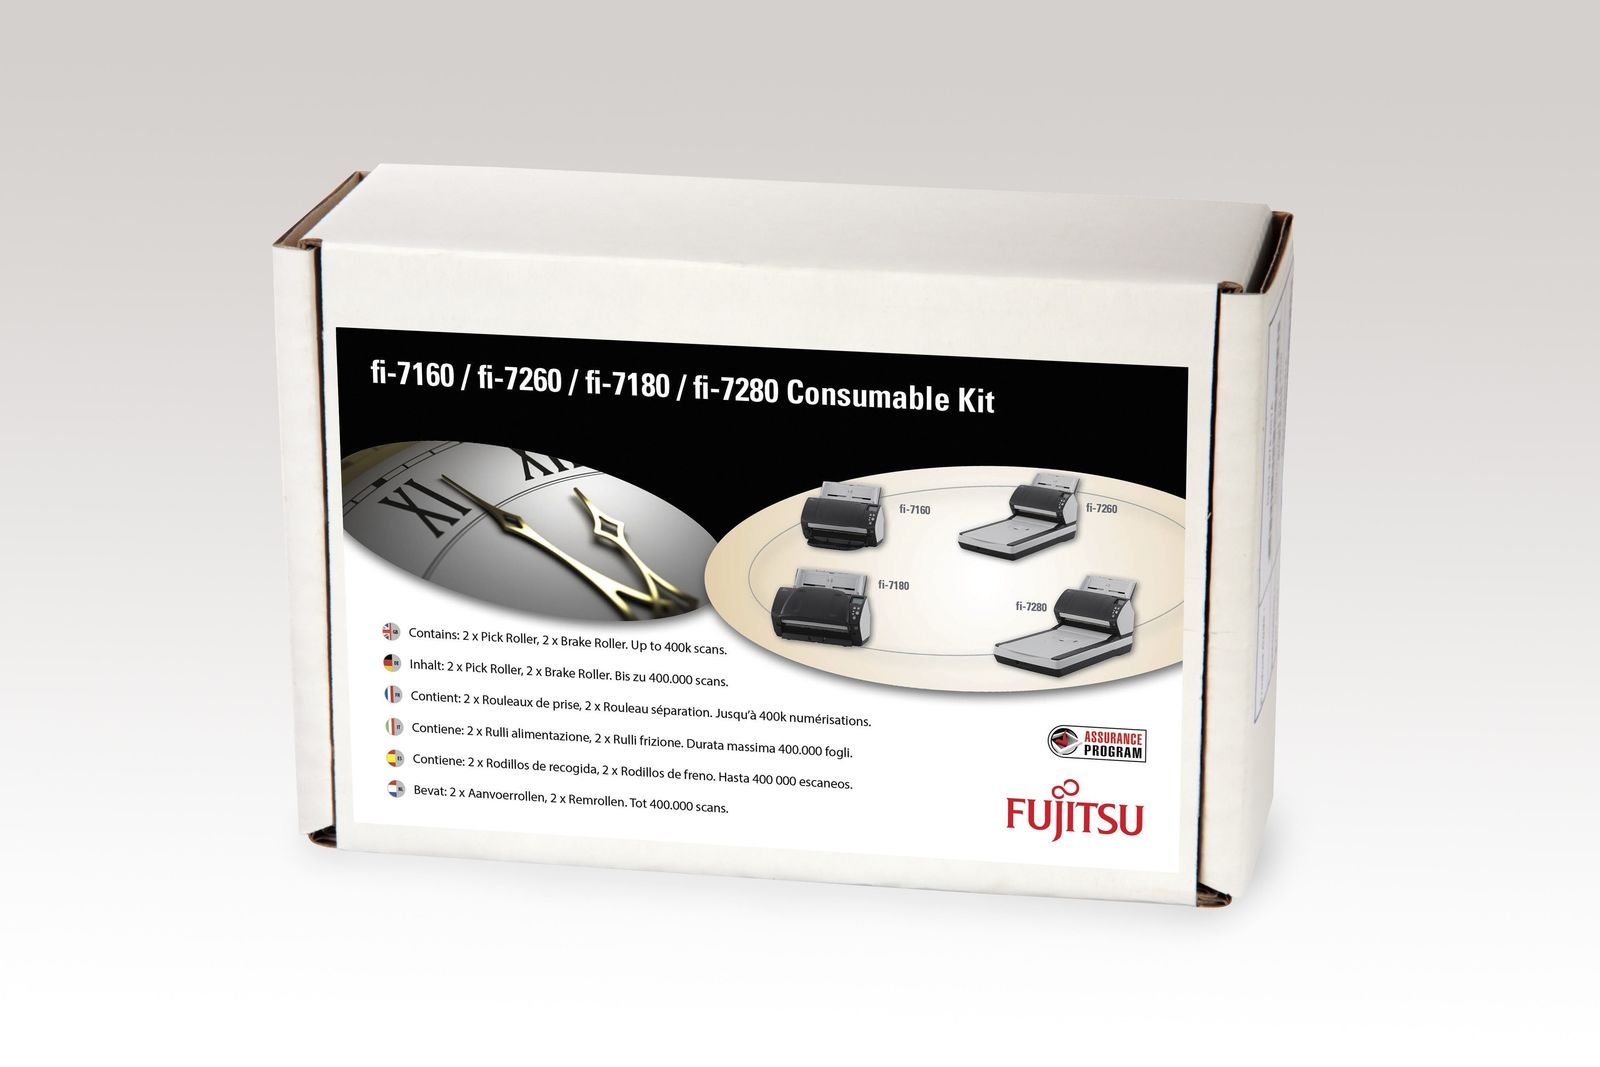 Fujitsu CON-3670-002A - CONSUMABLES KIT FOR 7160